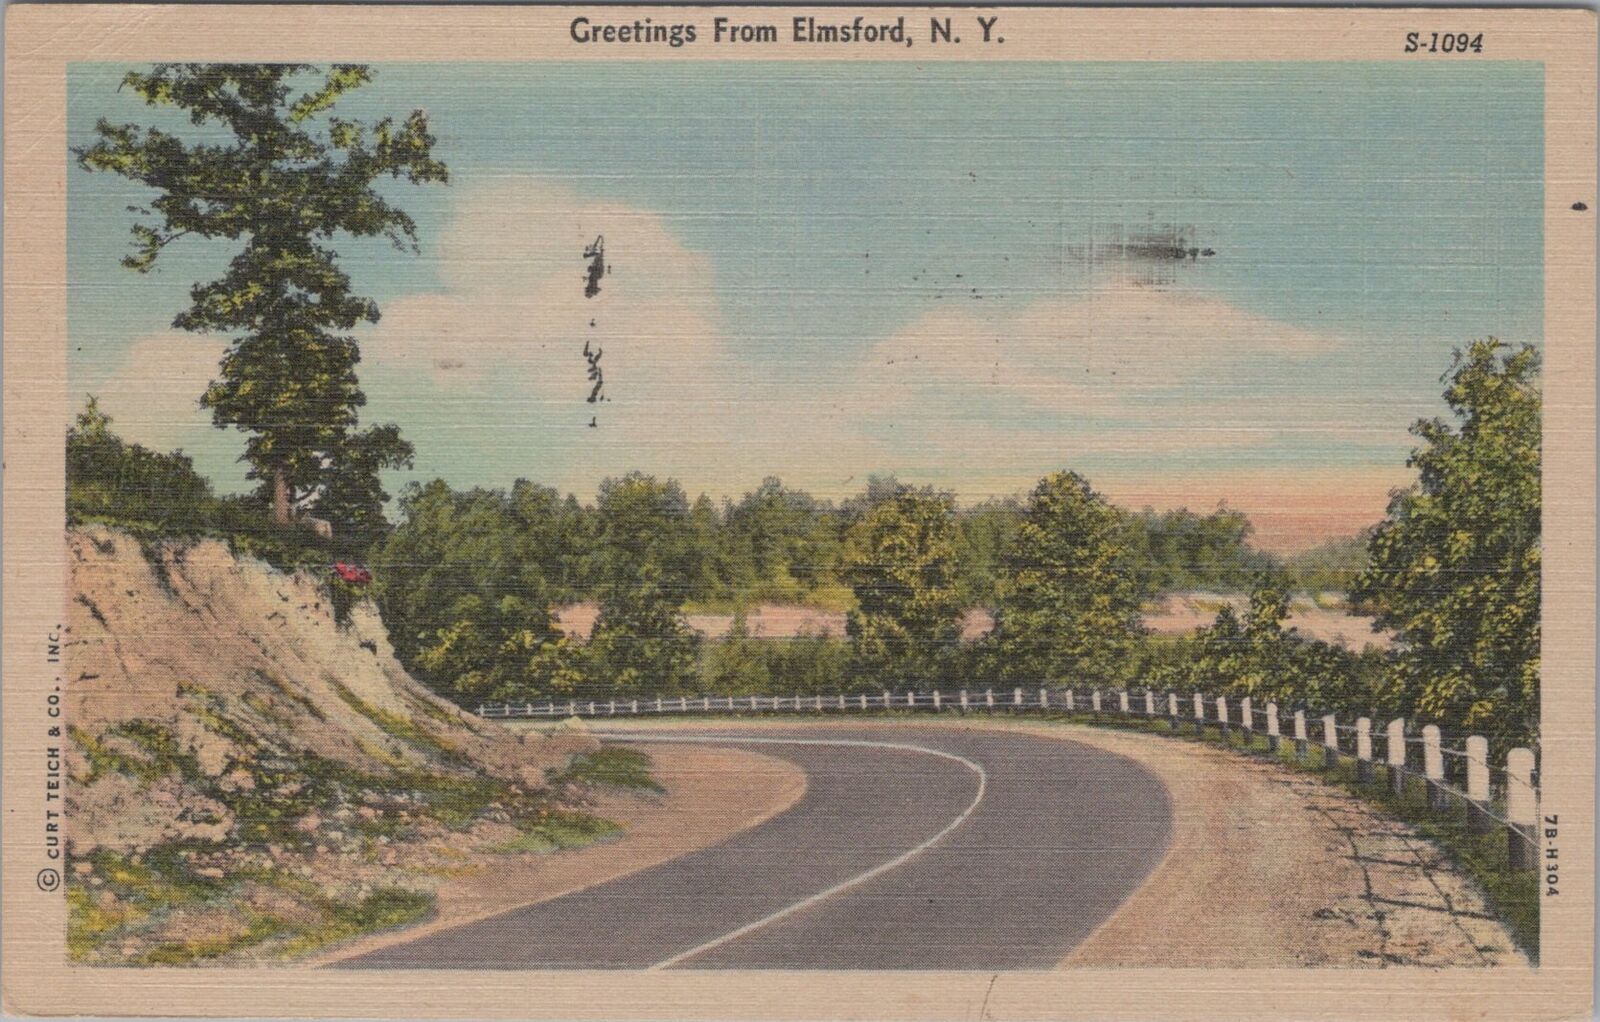 Greetings from Elmsford New York c1950s Road Scenes Series Postcard